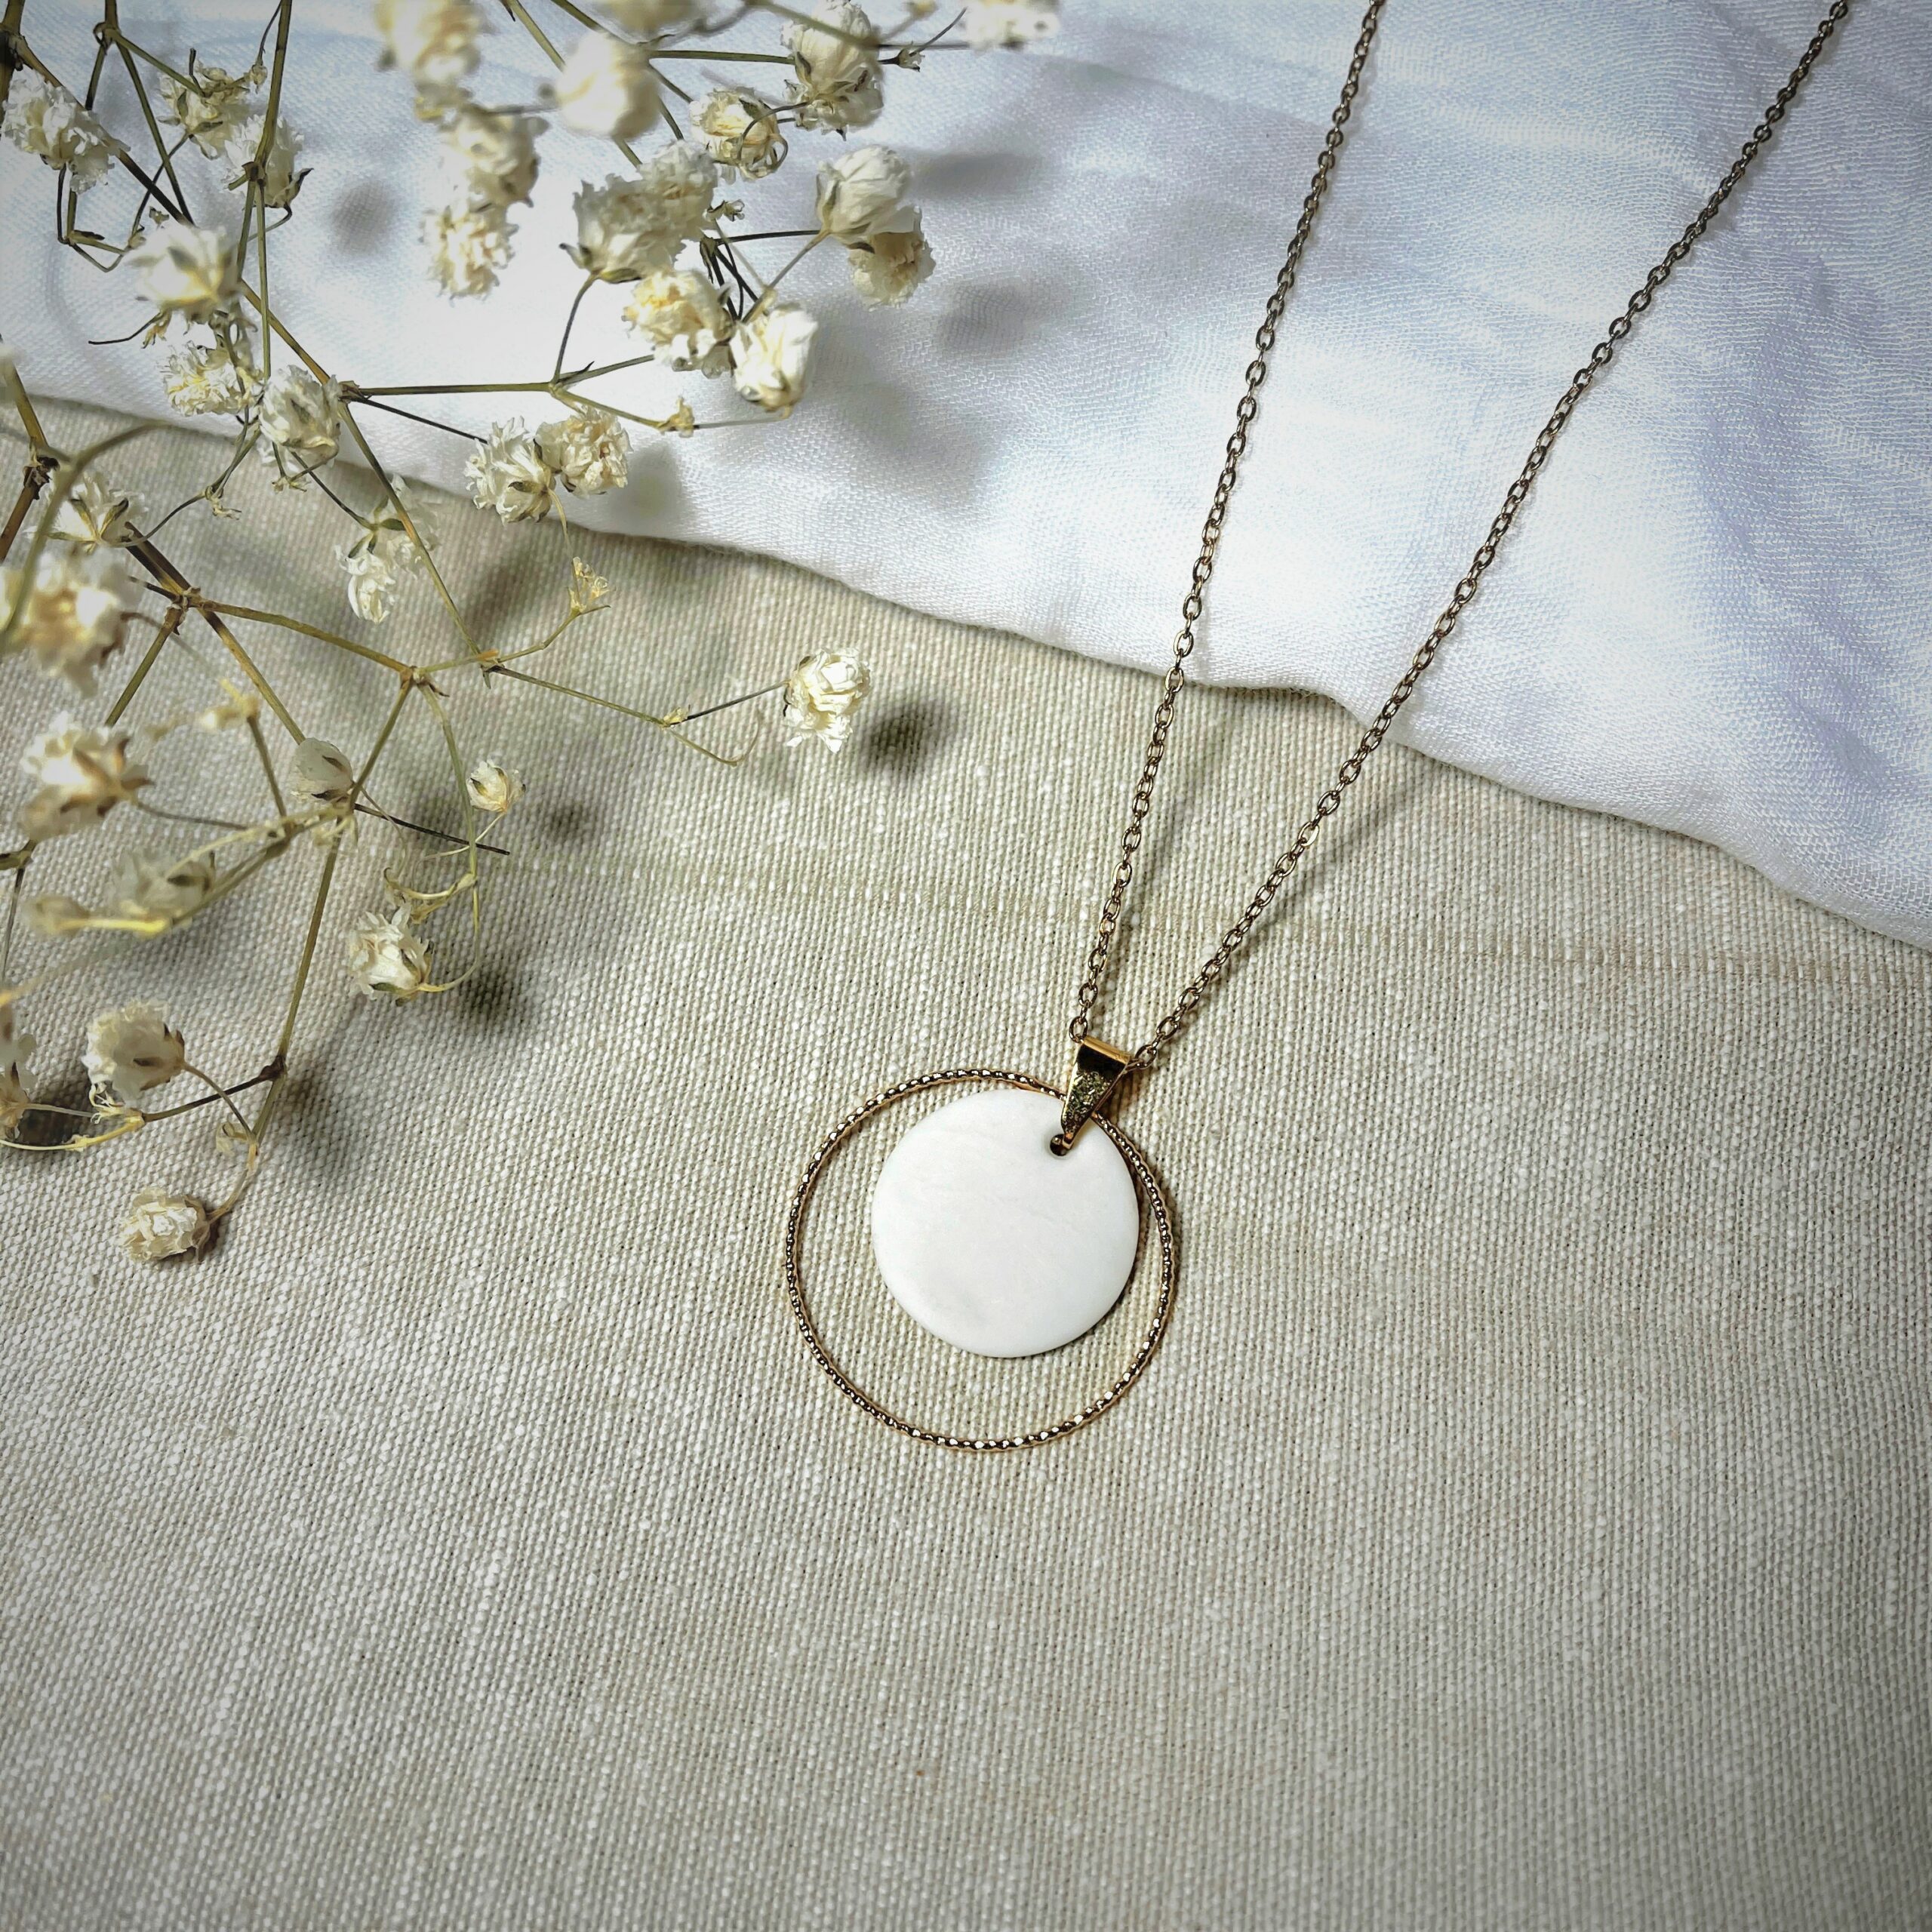 Médaillon de 2cm de diamètre en porcelaine blanche entouré d'un anneau doré de 3 cm vendu avec sa chaine dorée de 45cm de longueur